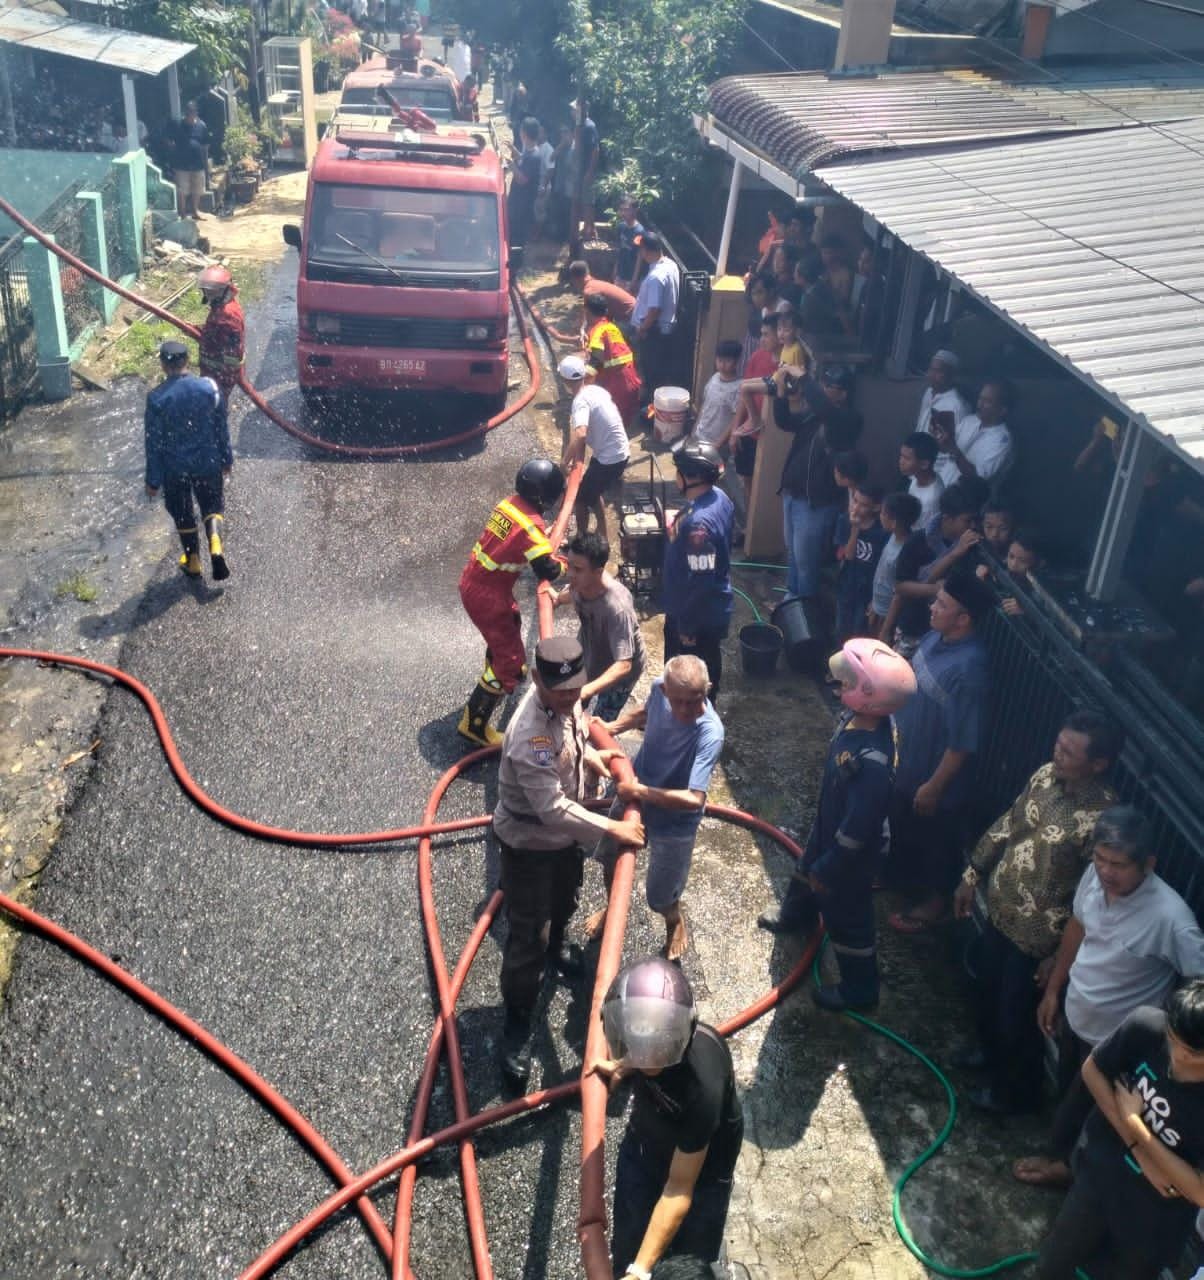 1 Unit Rumah Kontrakan di Kota Bengkulu Terbakar, Sumber Api Diduga dari Meteran Listrik  